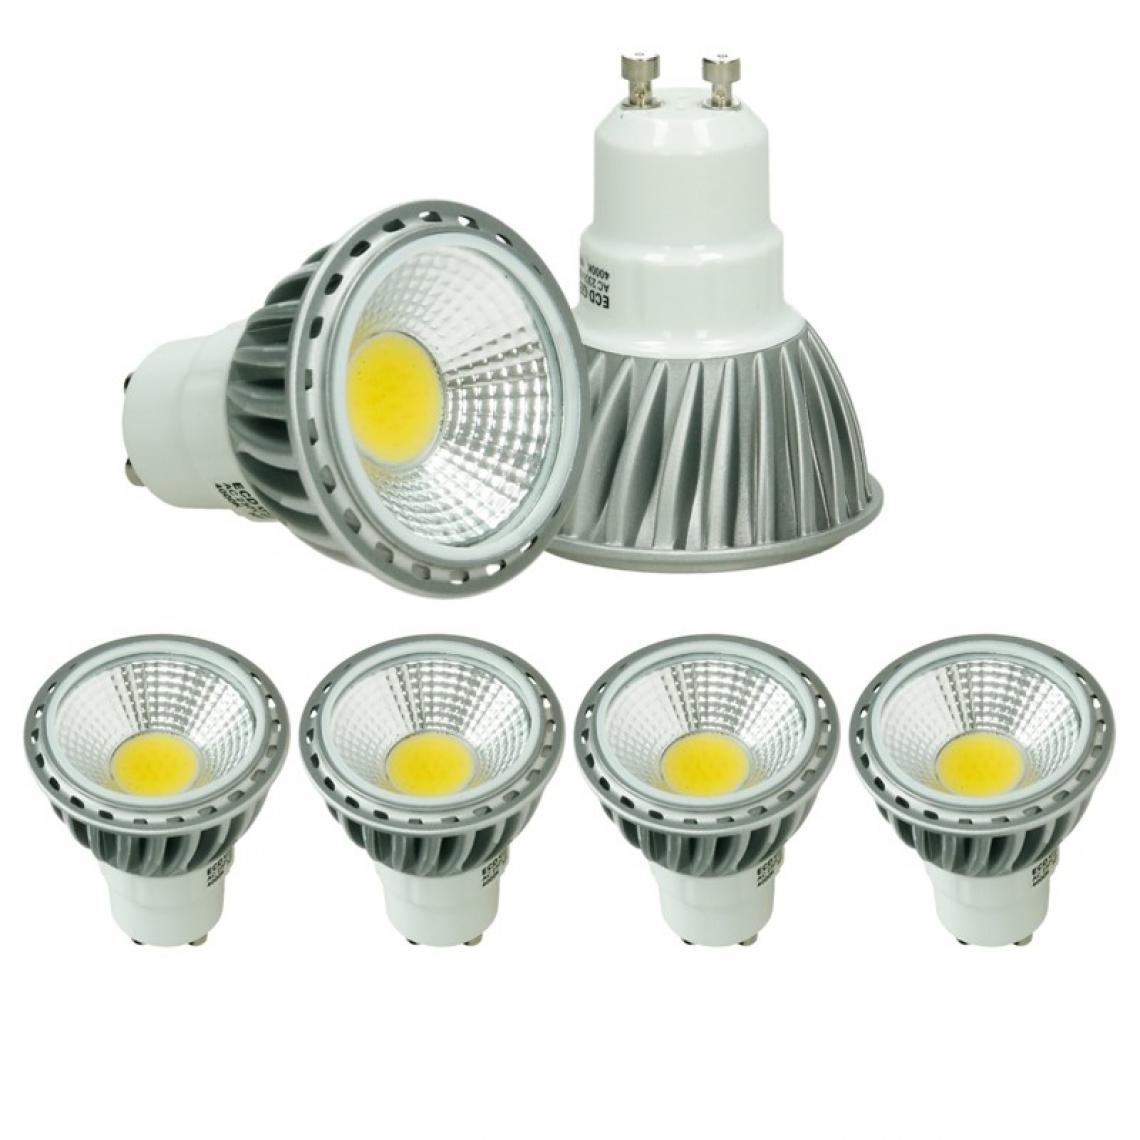 Ecd Germany - ECD Germany 4 x LED Spot 6W GU10 - Remplace l'halogène 30W - 220-240V - Angle de faisceau 60° - 386 lumen - 4000K Blanc neutre - Ampoule projecteur - Ampoules LED